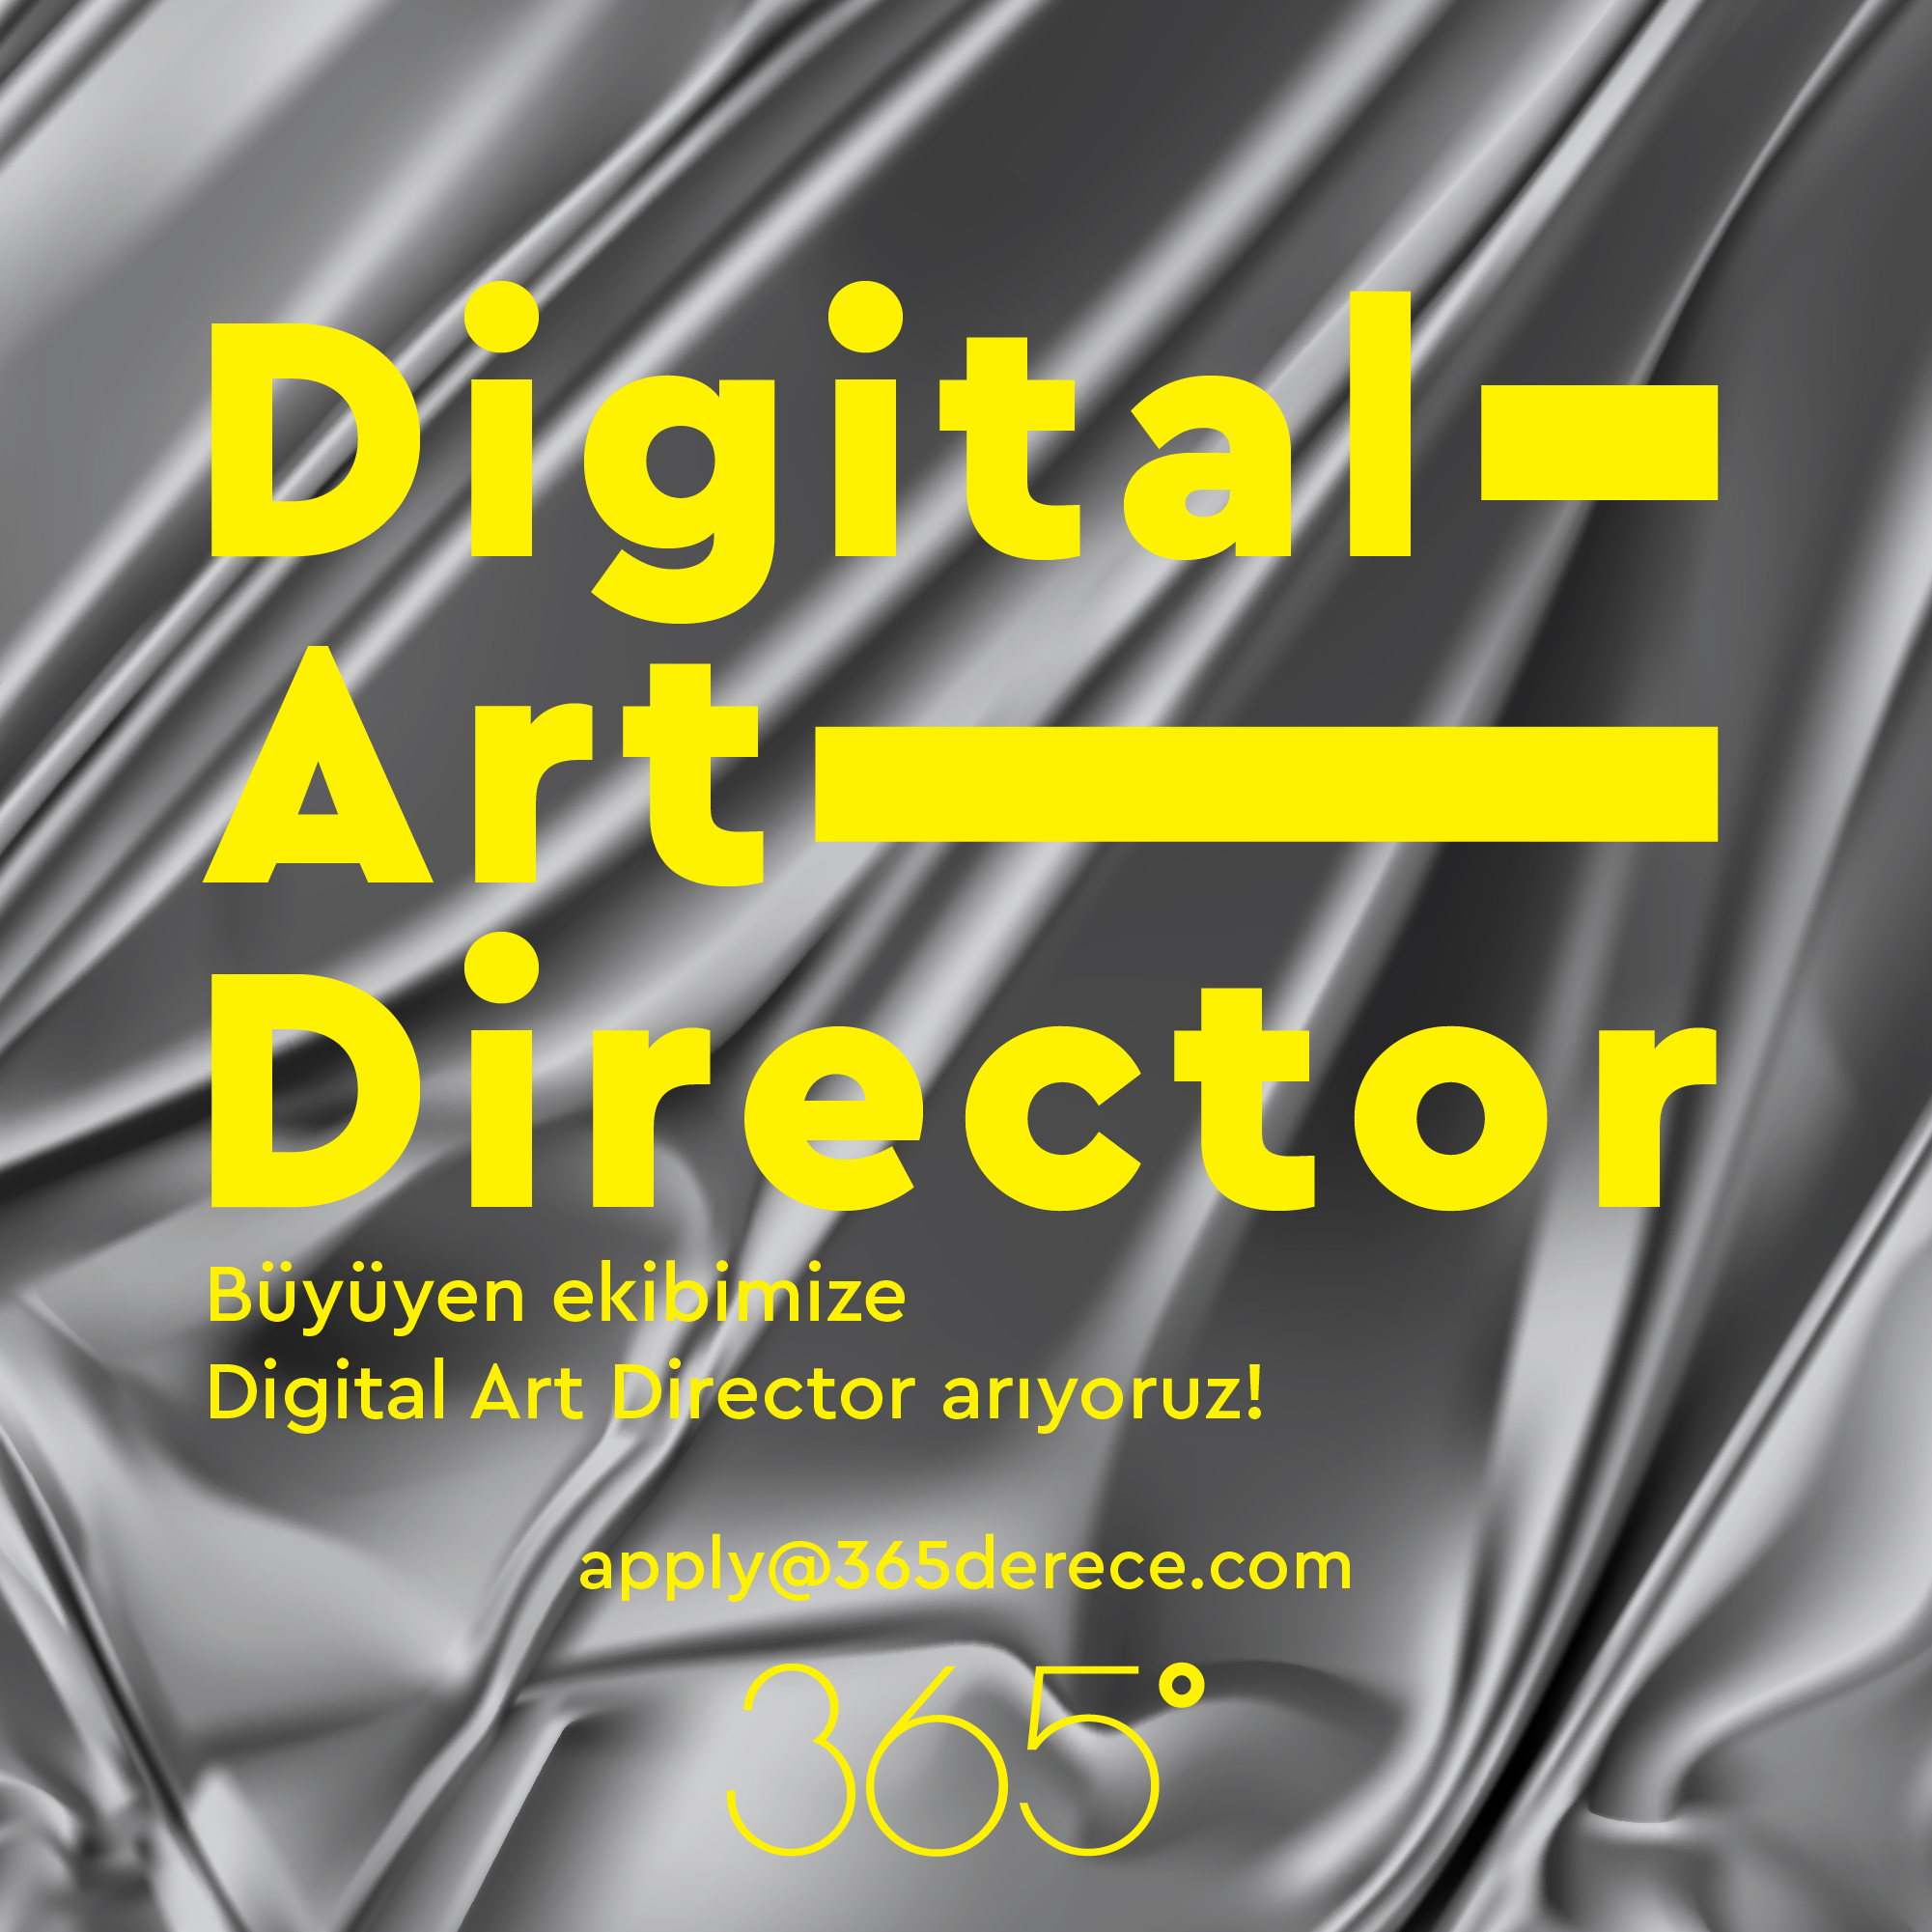 365 Derece Digital Art Director arıyor!